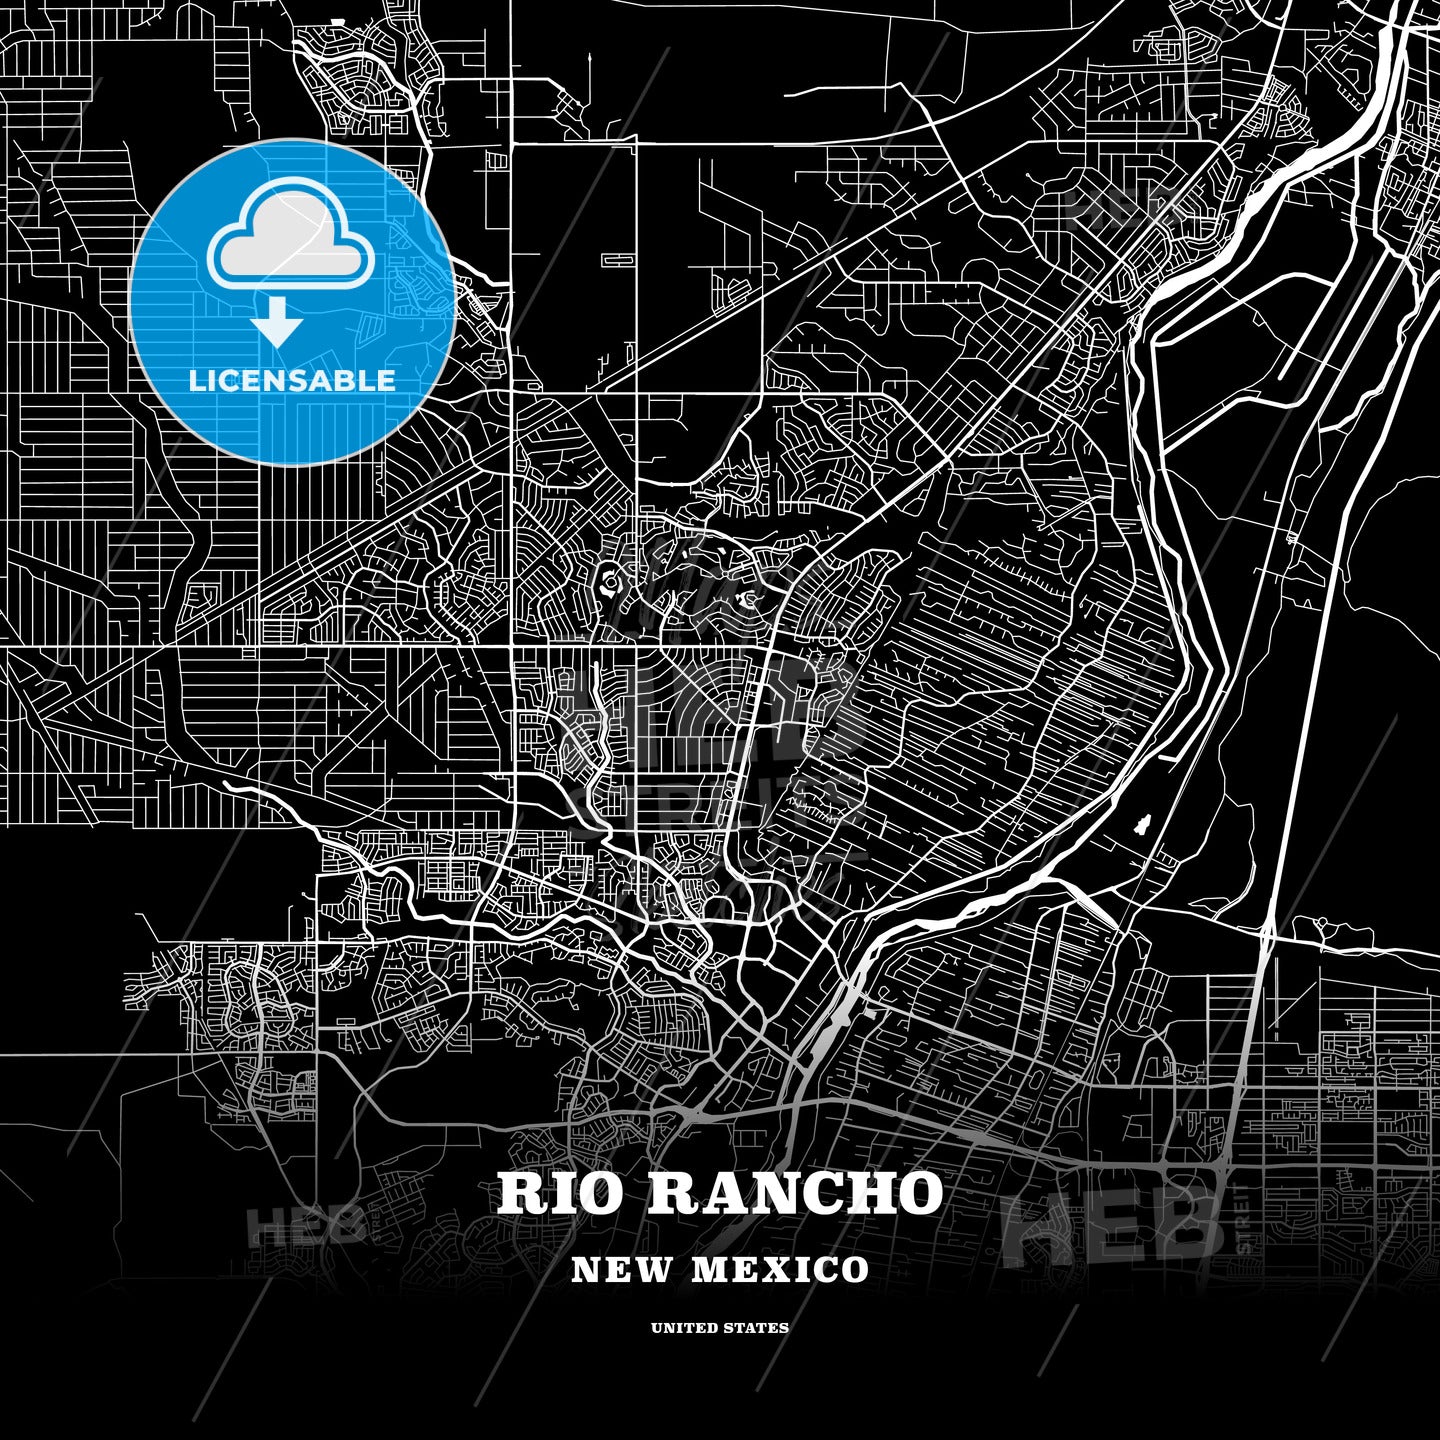 Rio Rancho, New Mexico, USA map